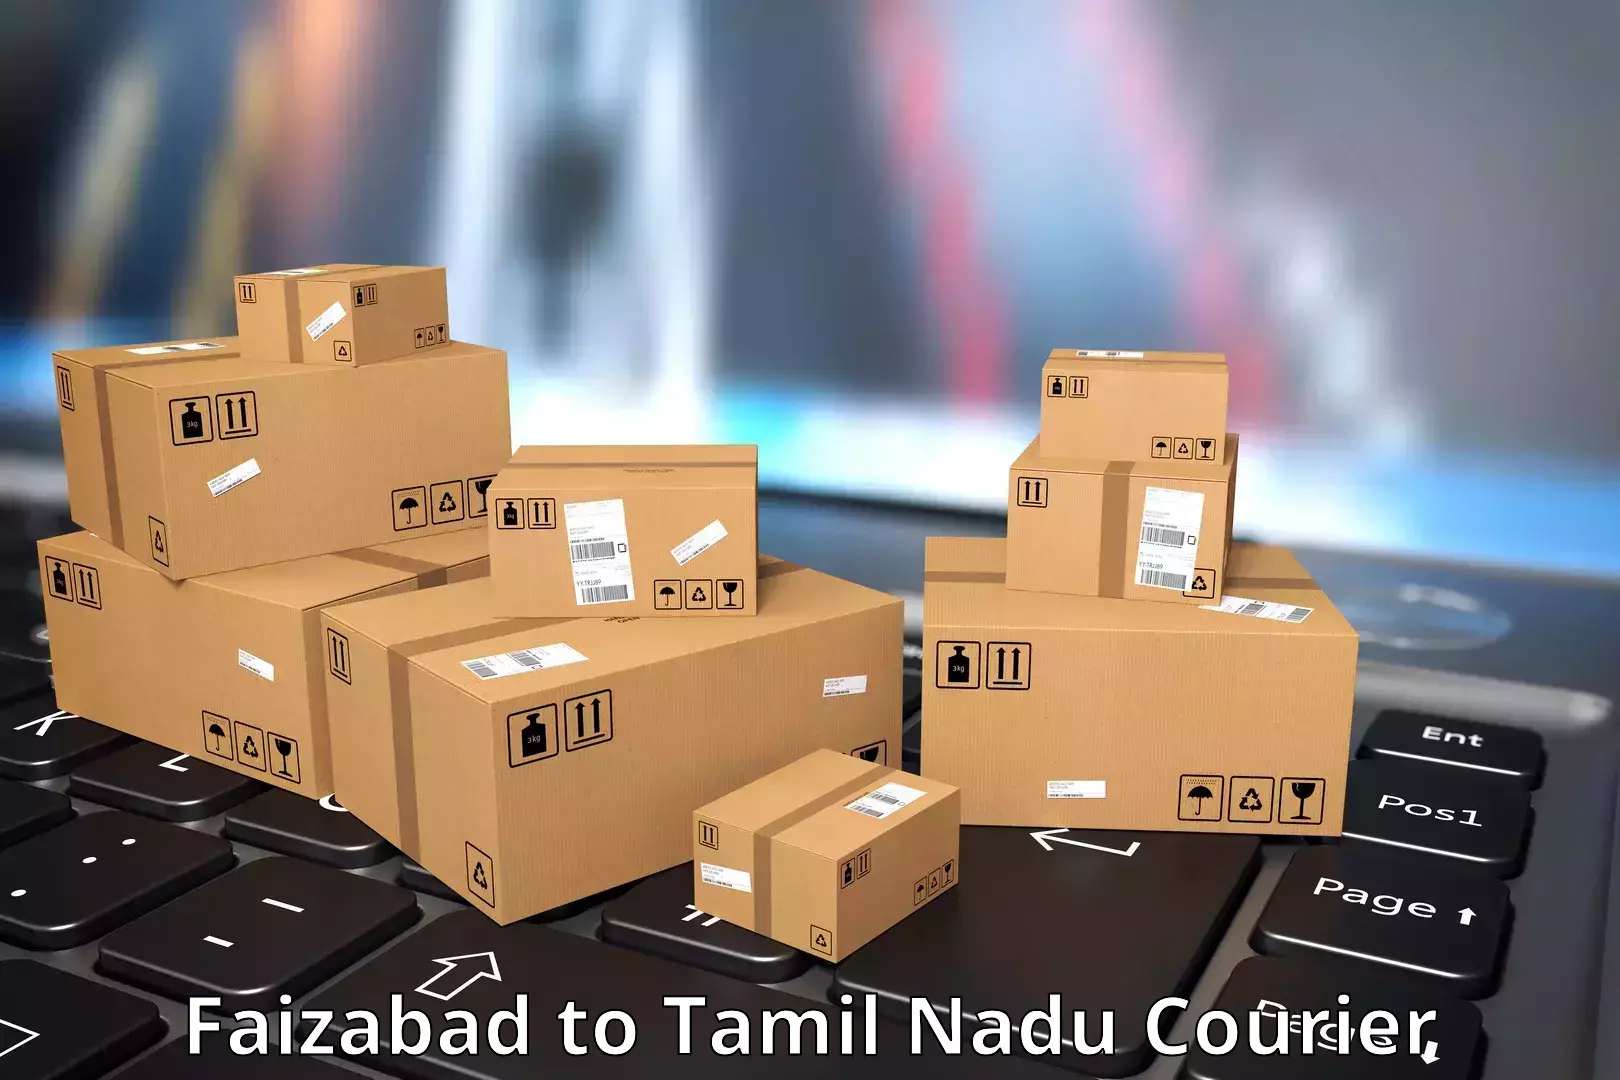 Flexible shipping options Faizabad to Aranthangi